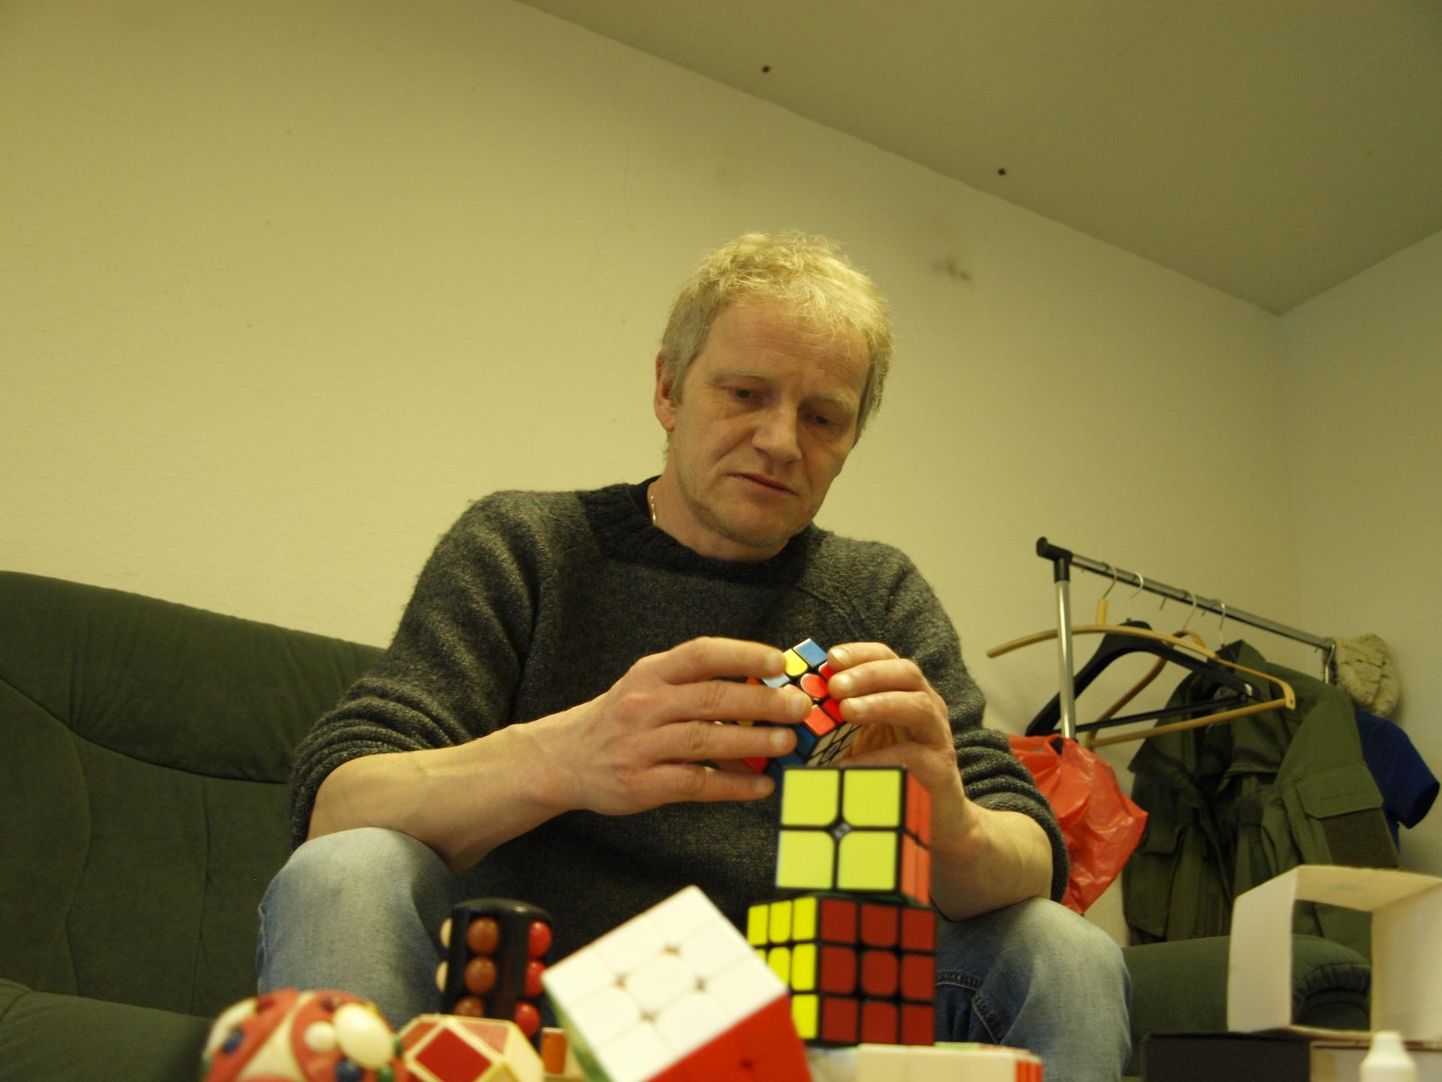 Erki Sepa tippmark Rubiku kuubiku lahendamises on 25,8 sekundit.